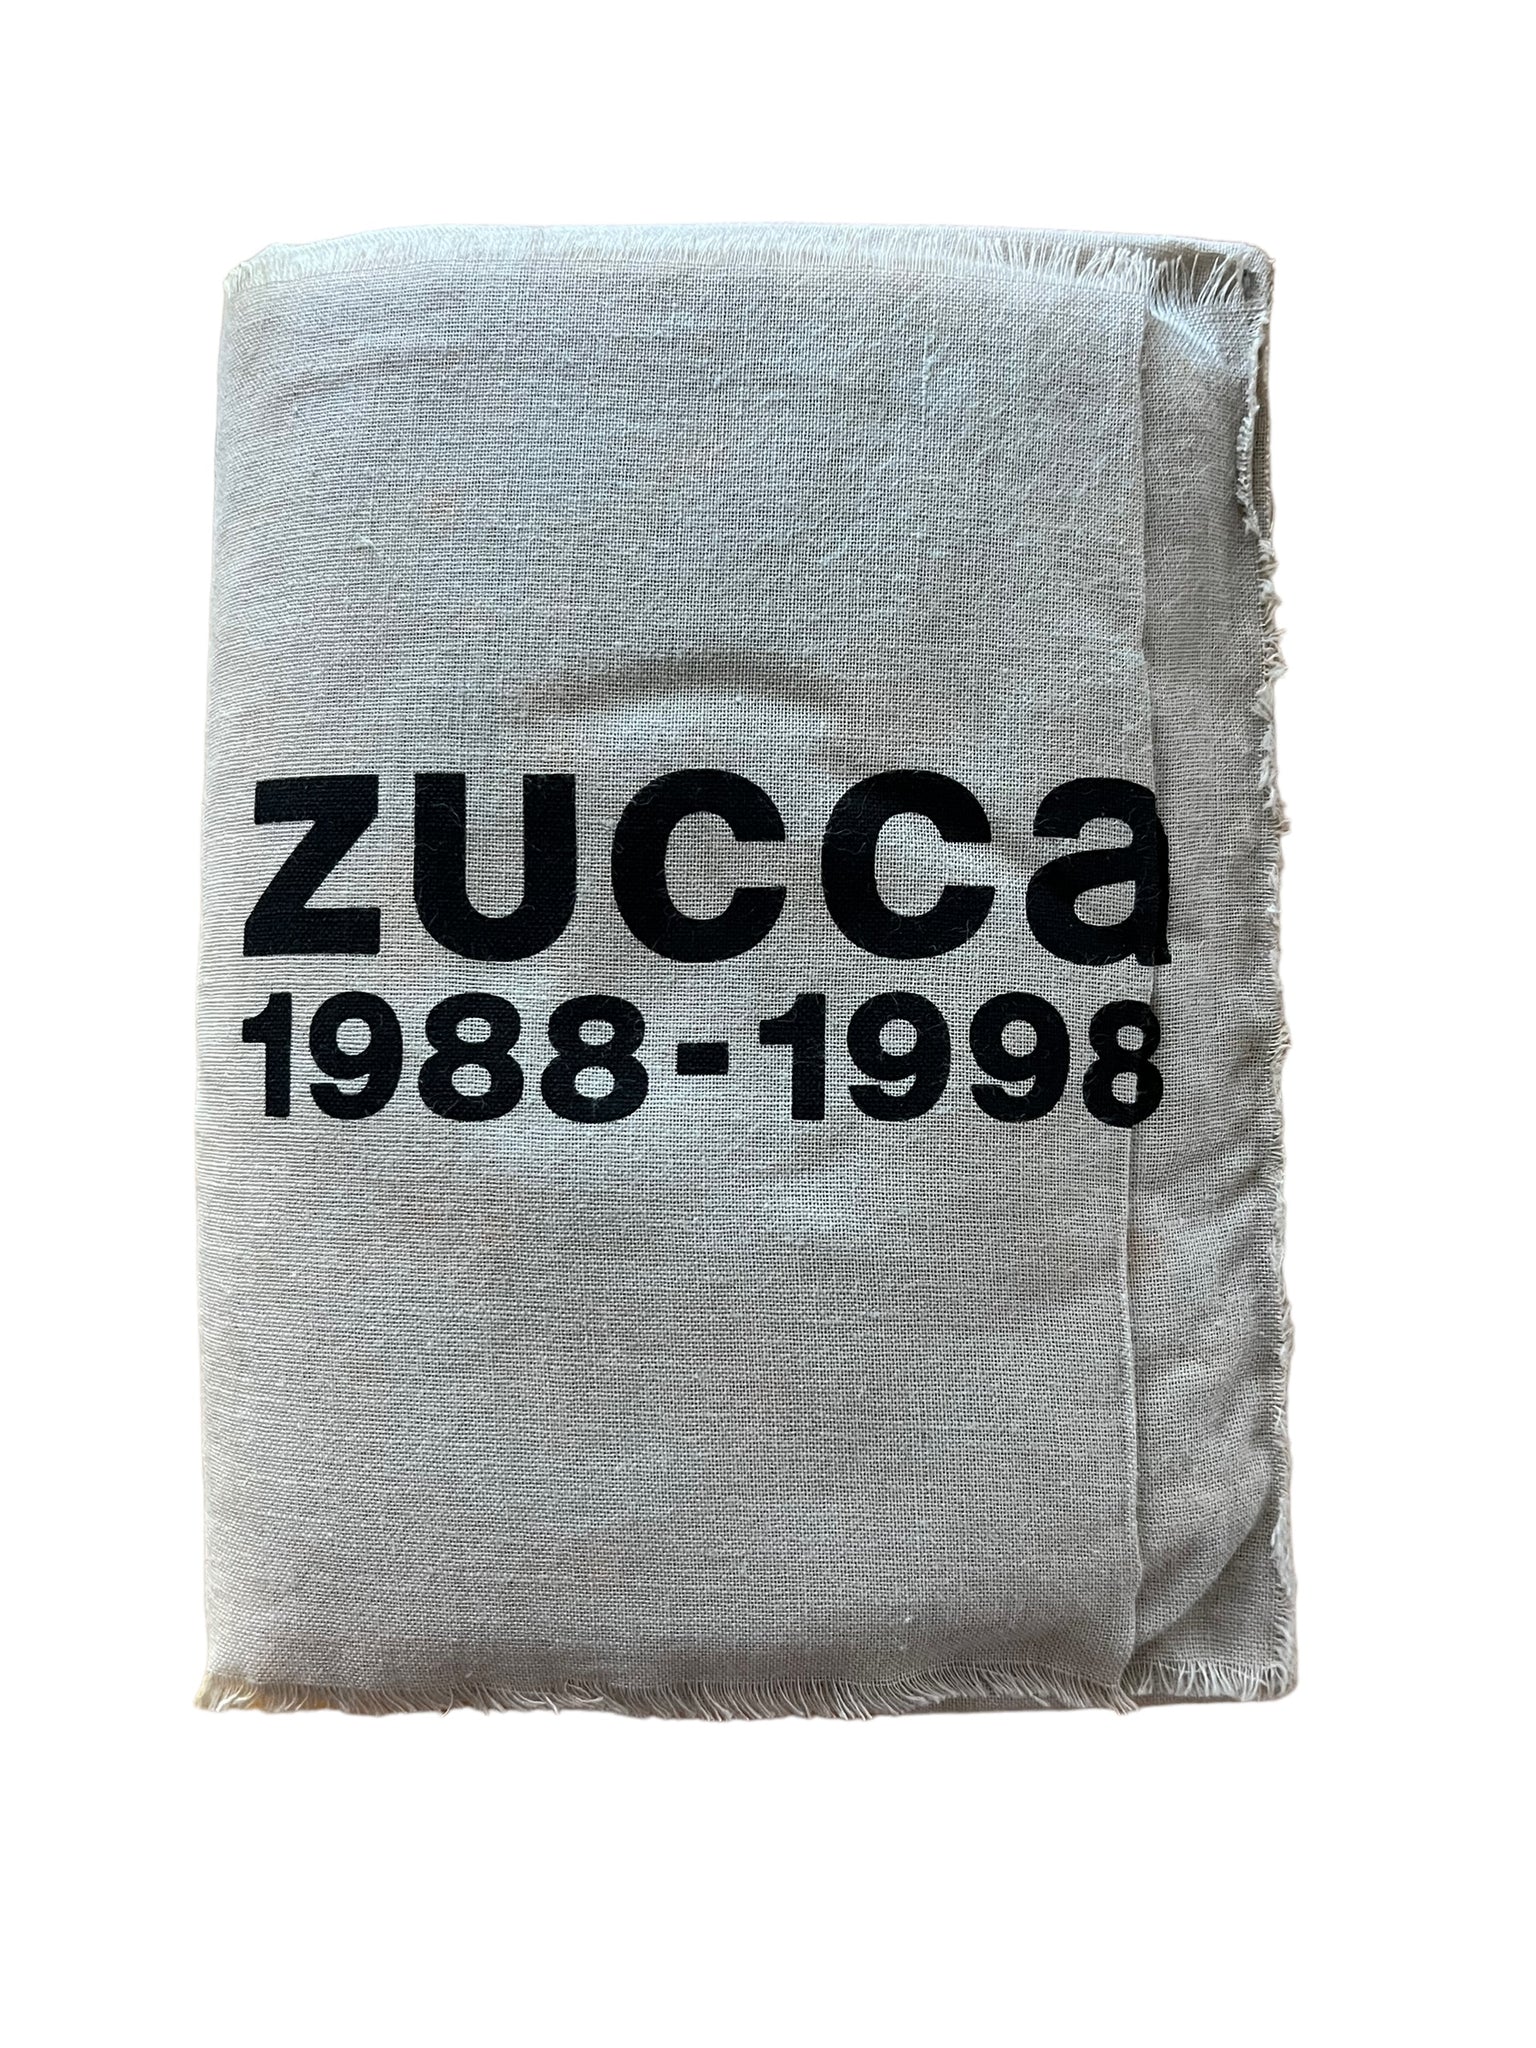 Zucca 1988-1999